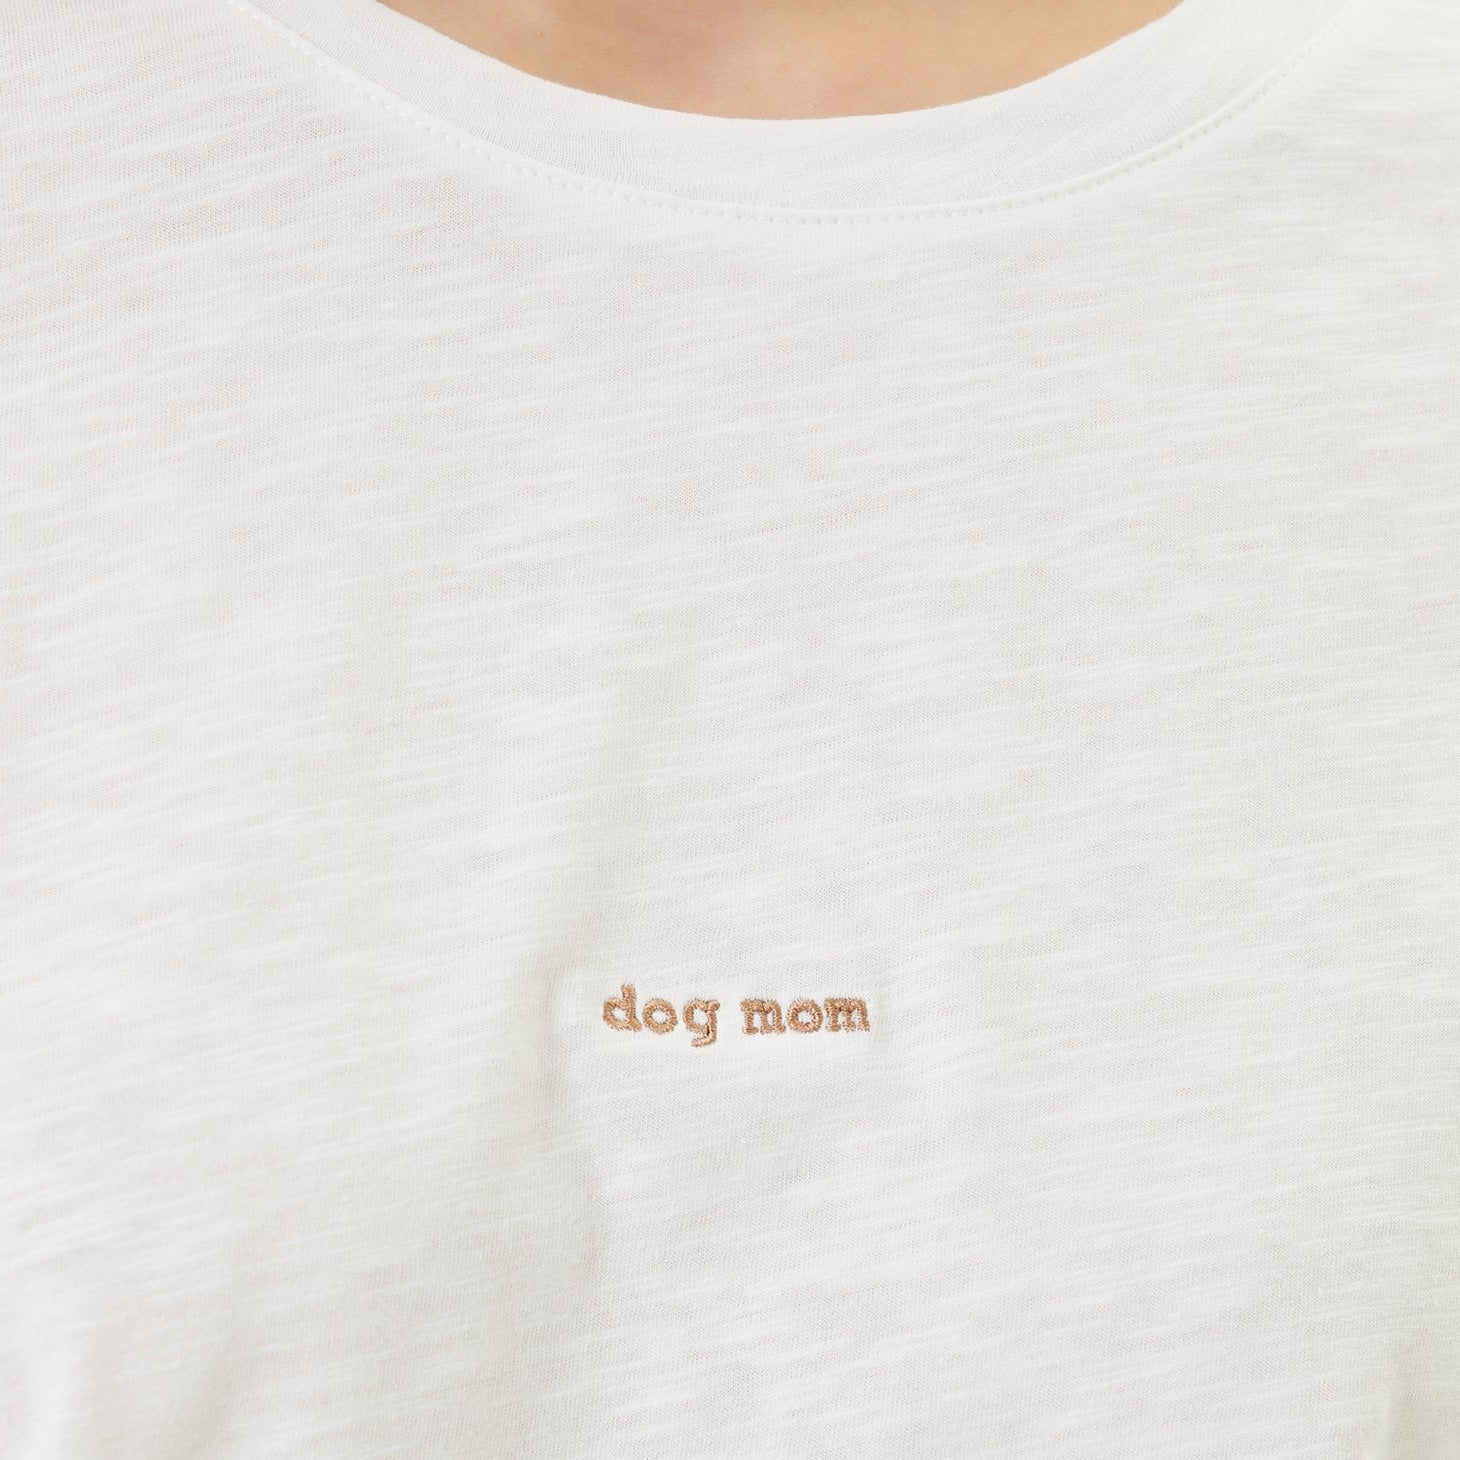 Oversized T-shirt "dog mom" - MONS BONS